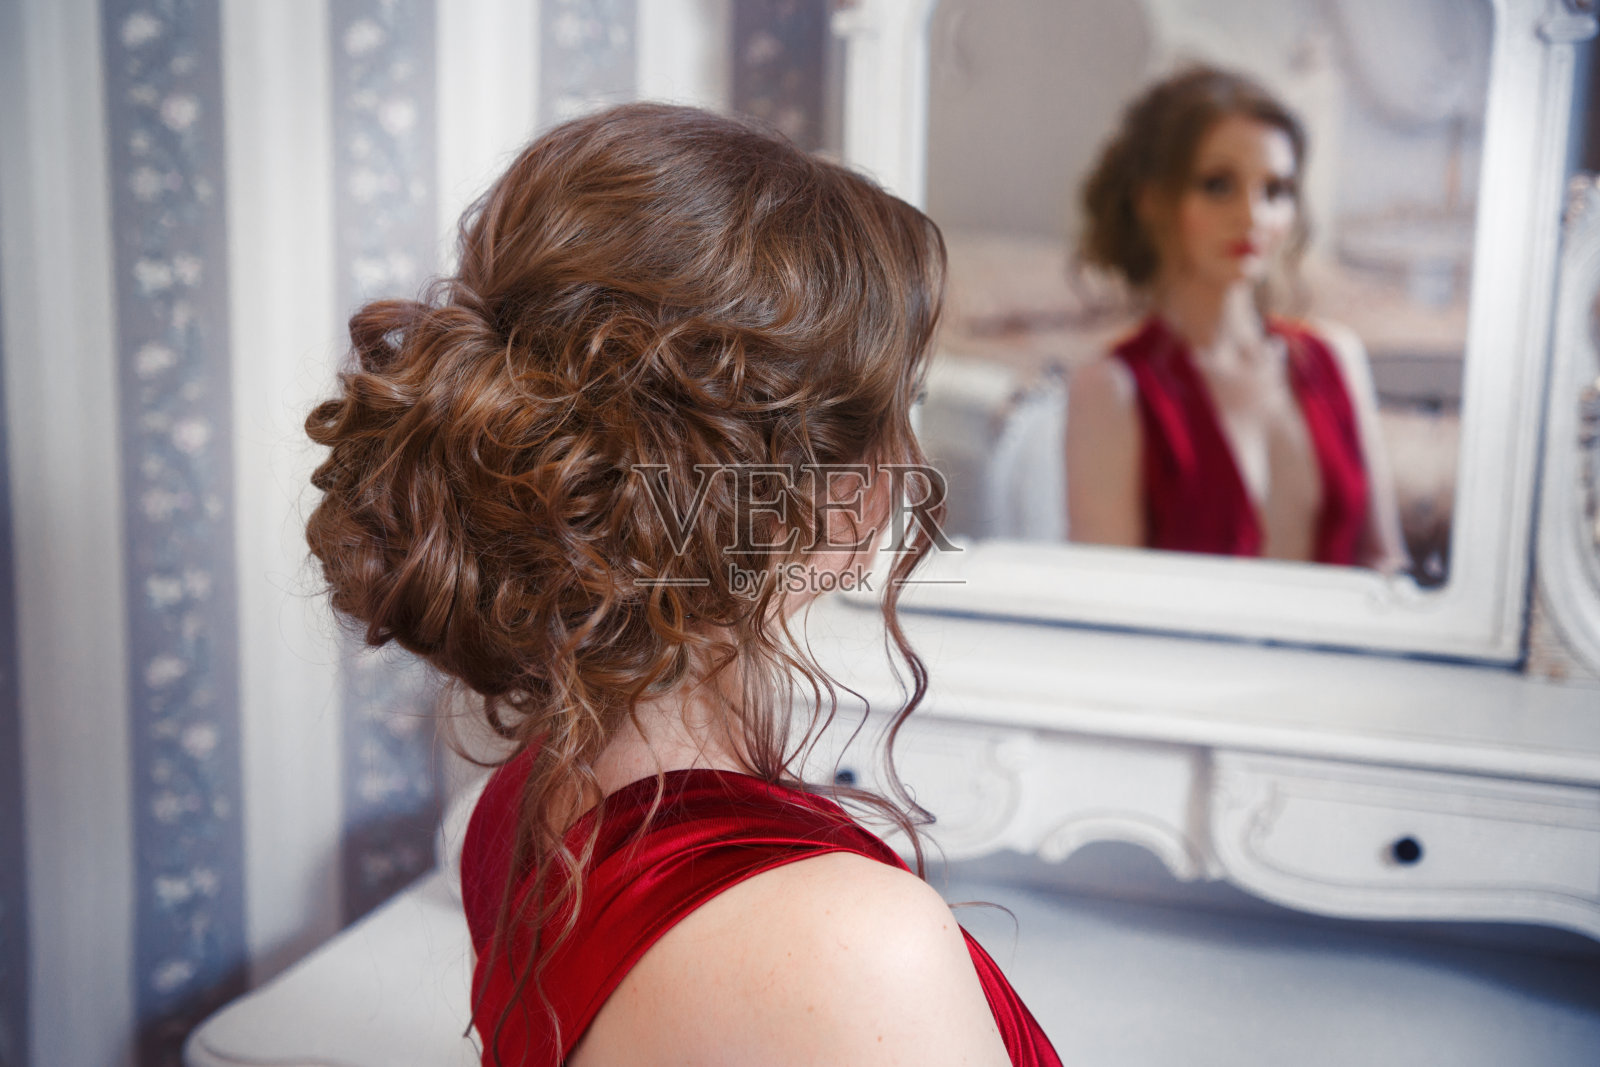 镜子里映出一个梳着漂亮发型的女孩。照片摄影图片